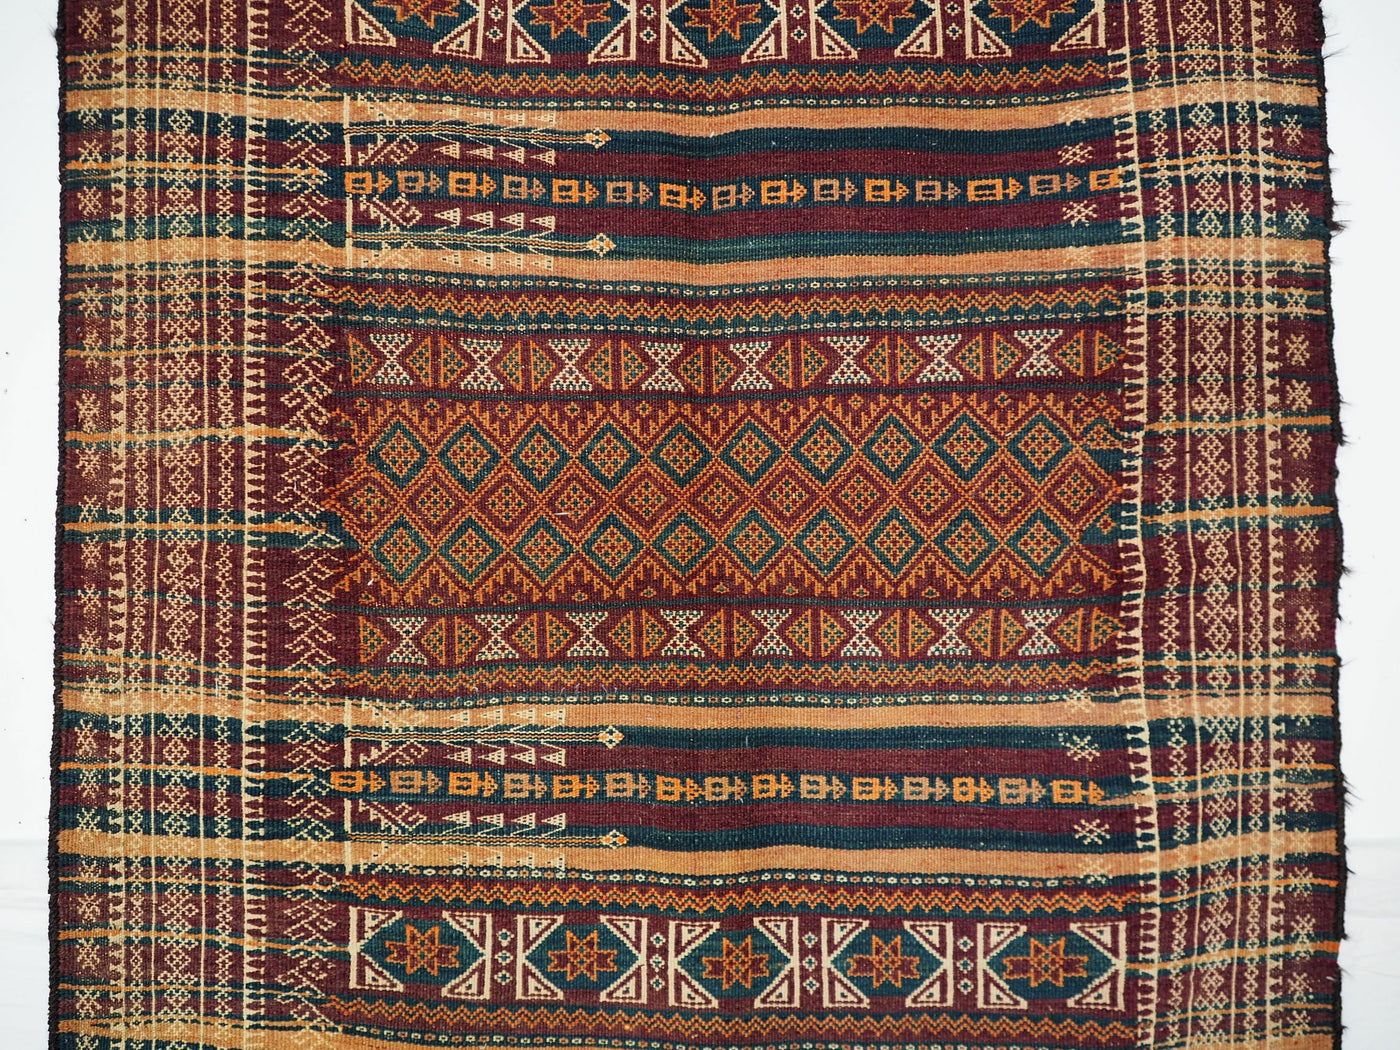 300x116 cm Antik orient handgewebte Teppich Nomaden Balucsumakh kelim afghan Beloch kilim Nr-19/PK-10  Orientsbazar   